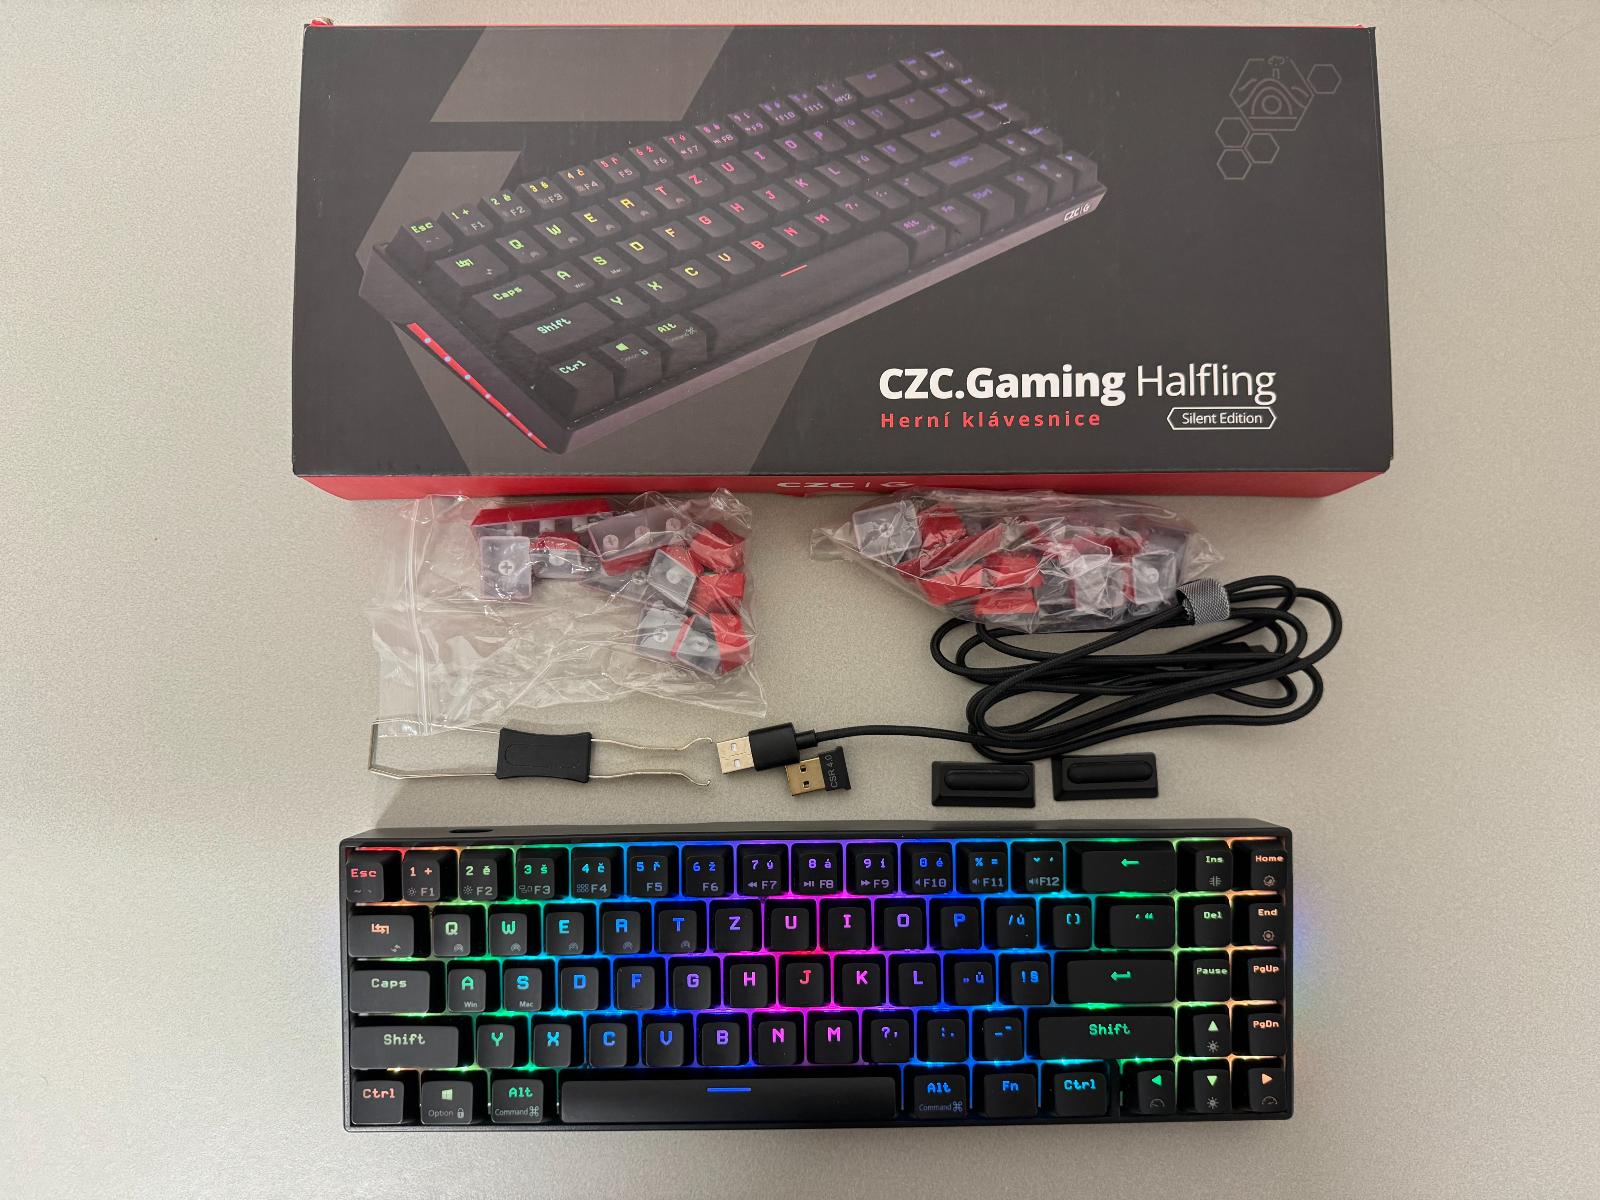 CZC.Gaming Halfling, herná klávesnica, Cherry MX Silent Red, CZ - Vstupné zariadenie k PC